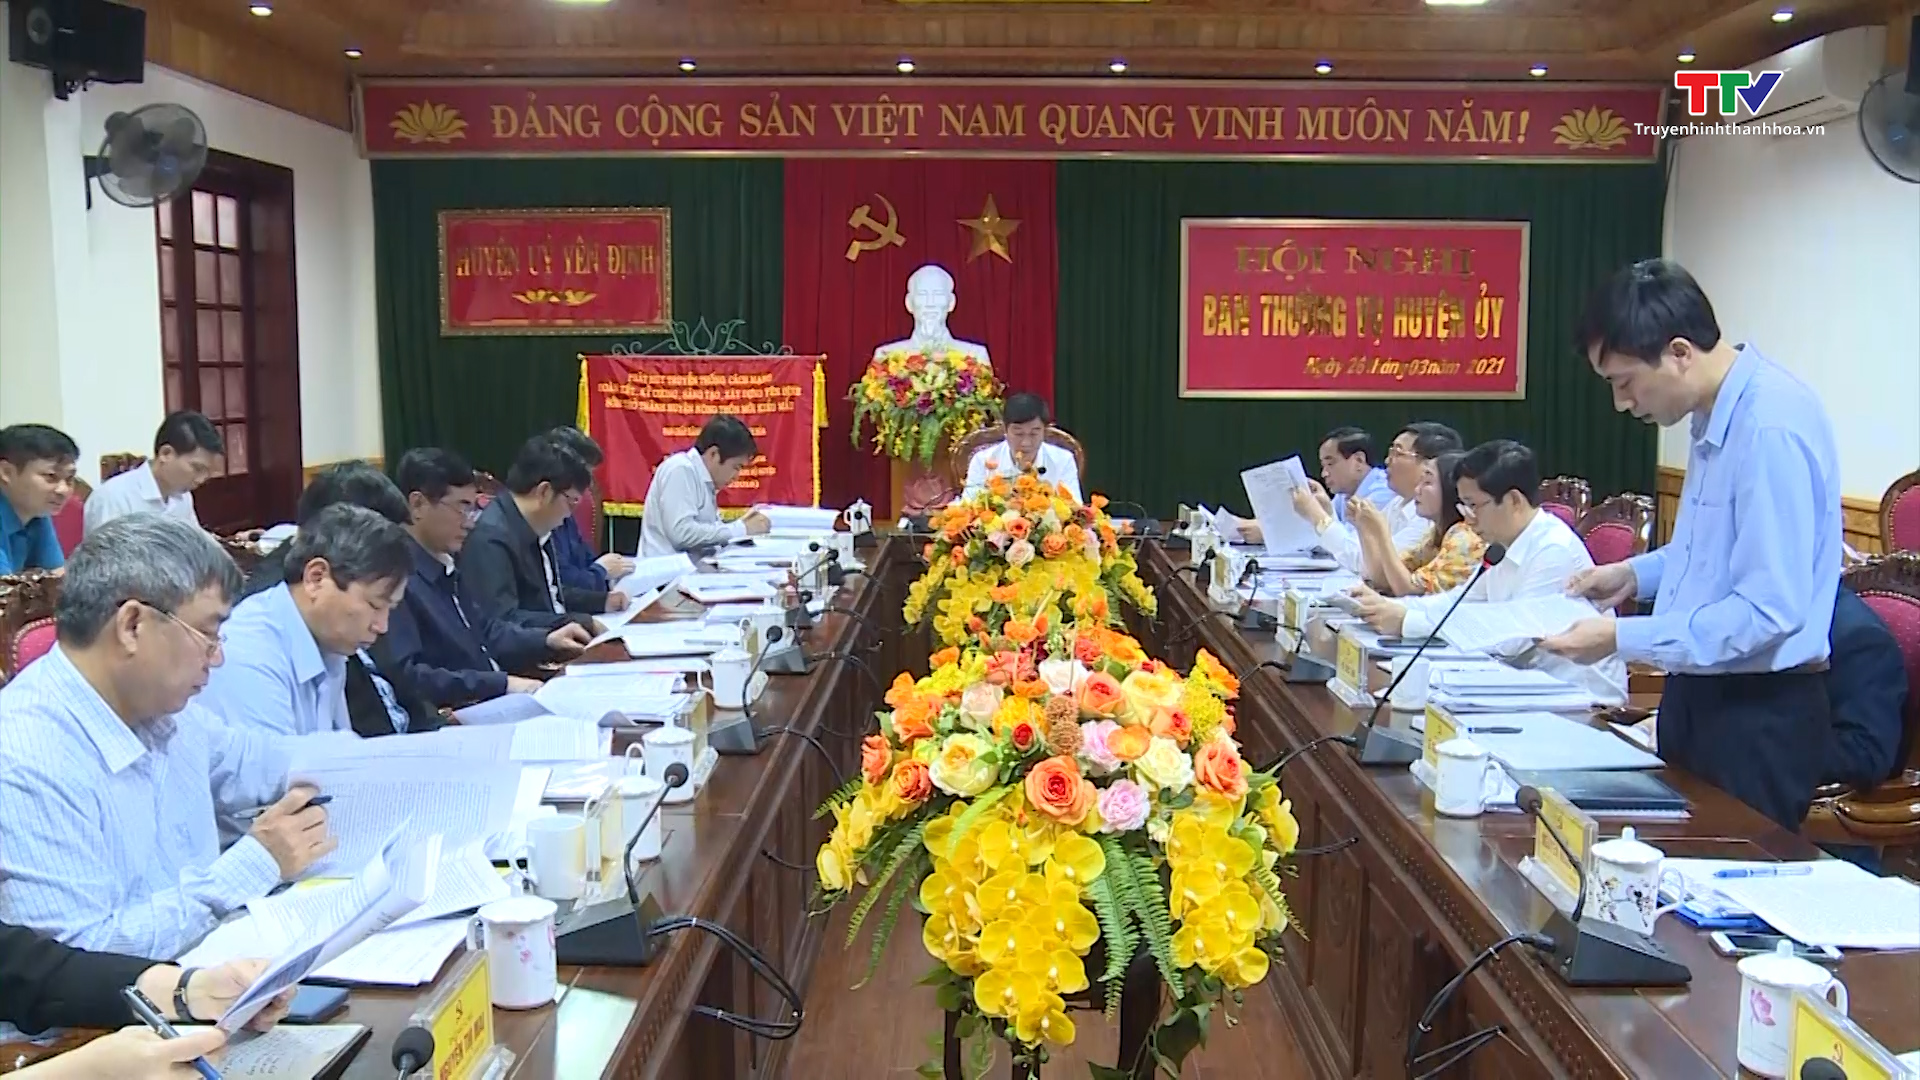 Trung tâm Chính trị huyện Yên Định nâng cao chất lượng đào tạo, bồi dưỡng cán bộ - Ảnh 2.